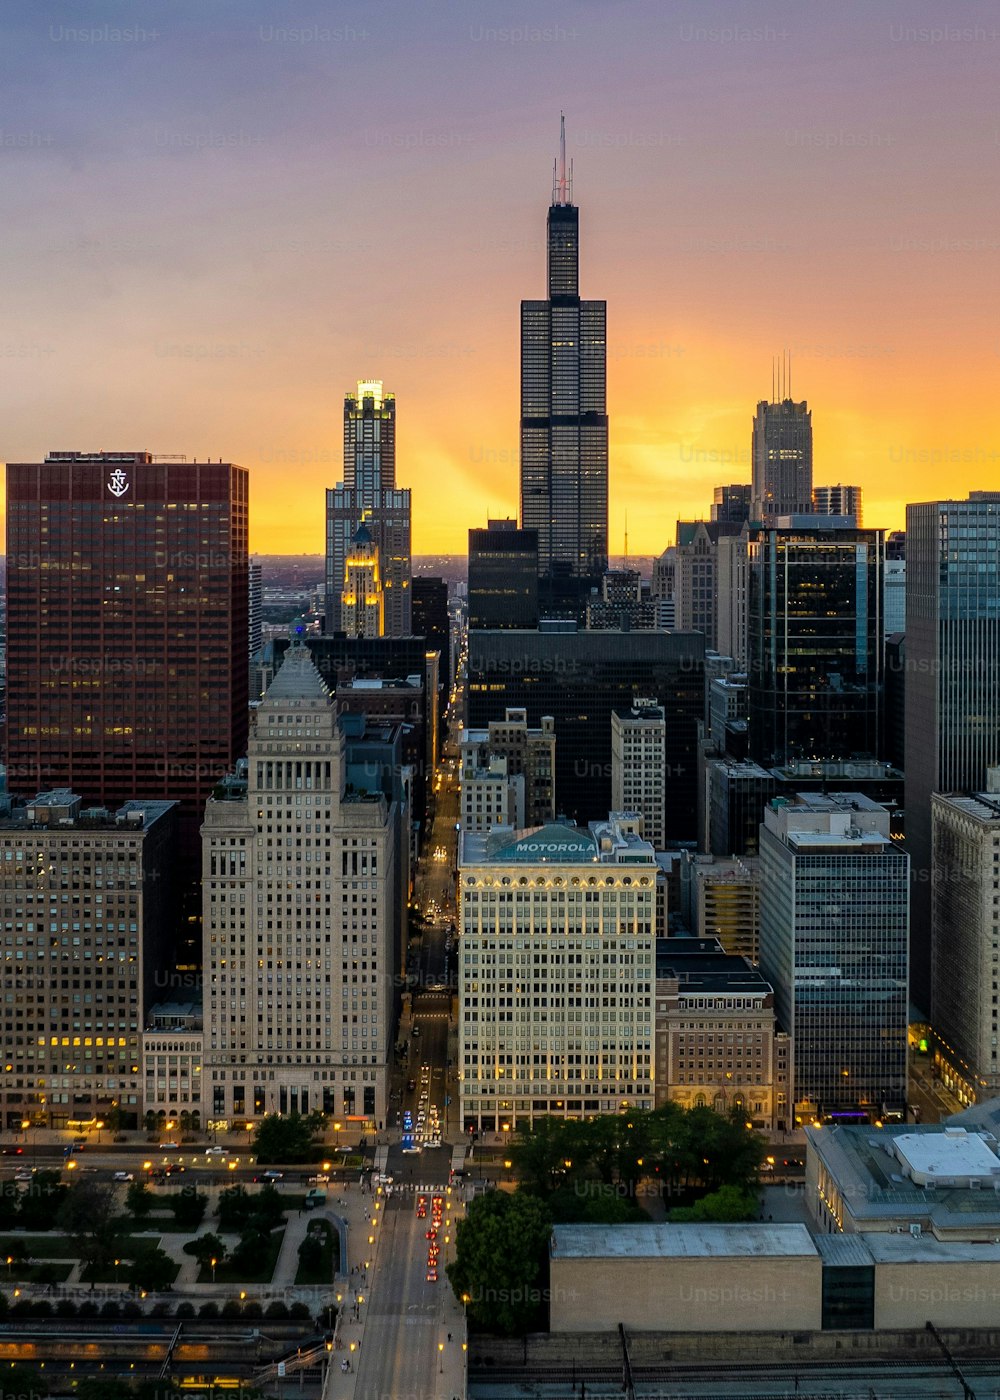 Uma vista aérea do centro de Chicago com arranha-céus altos ao pôr do sol no fundo do céu nublado